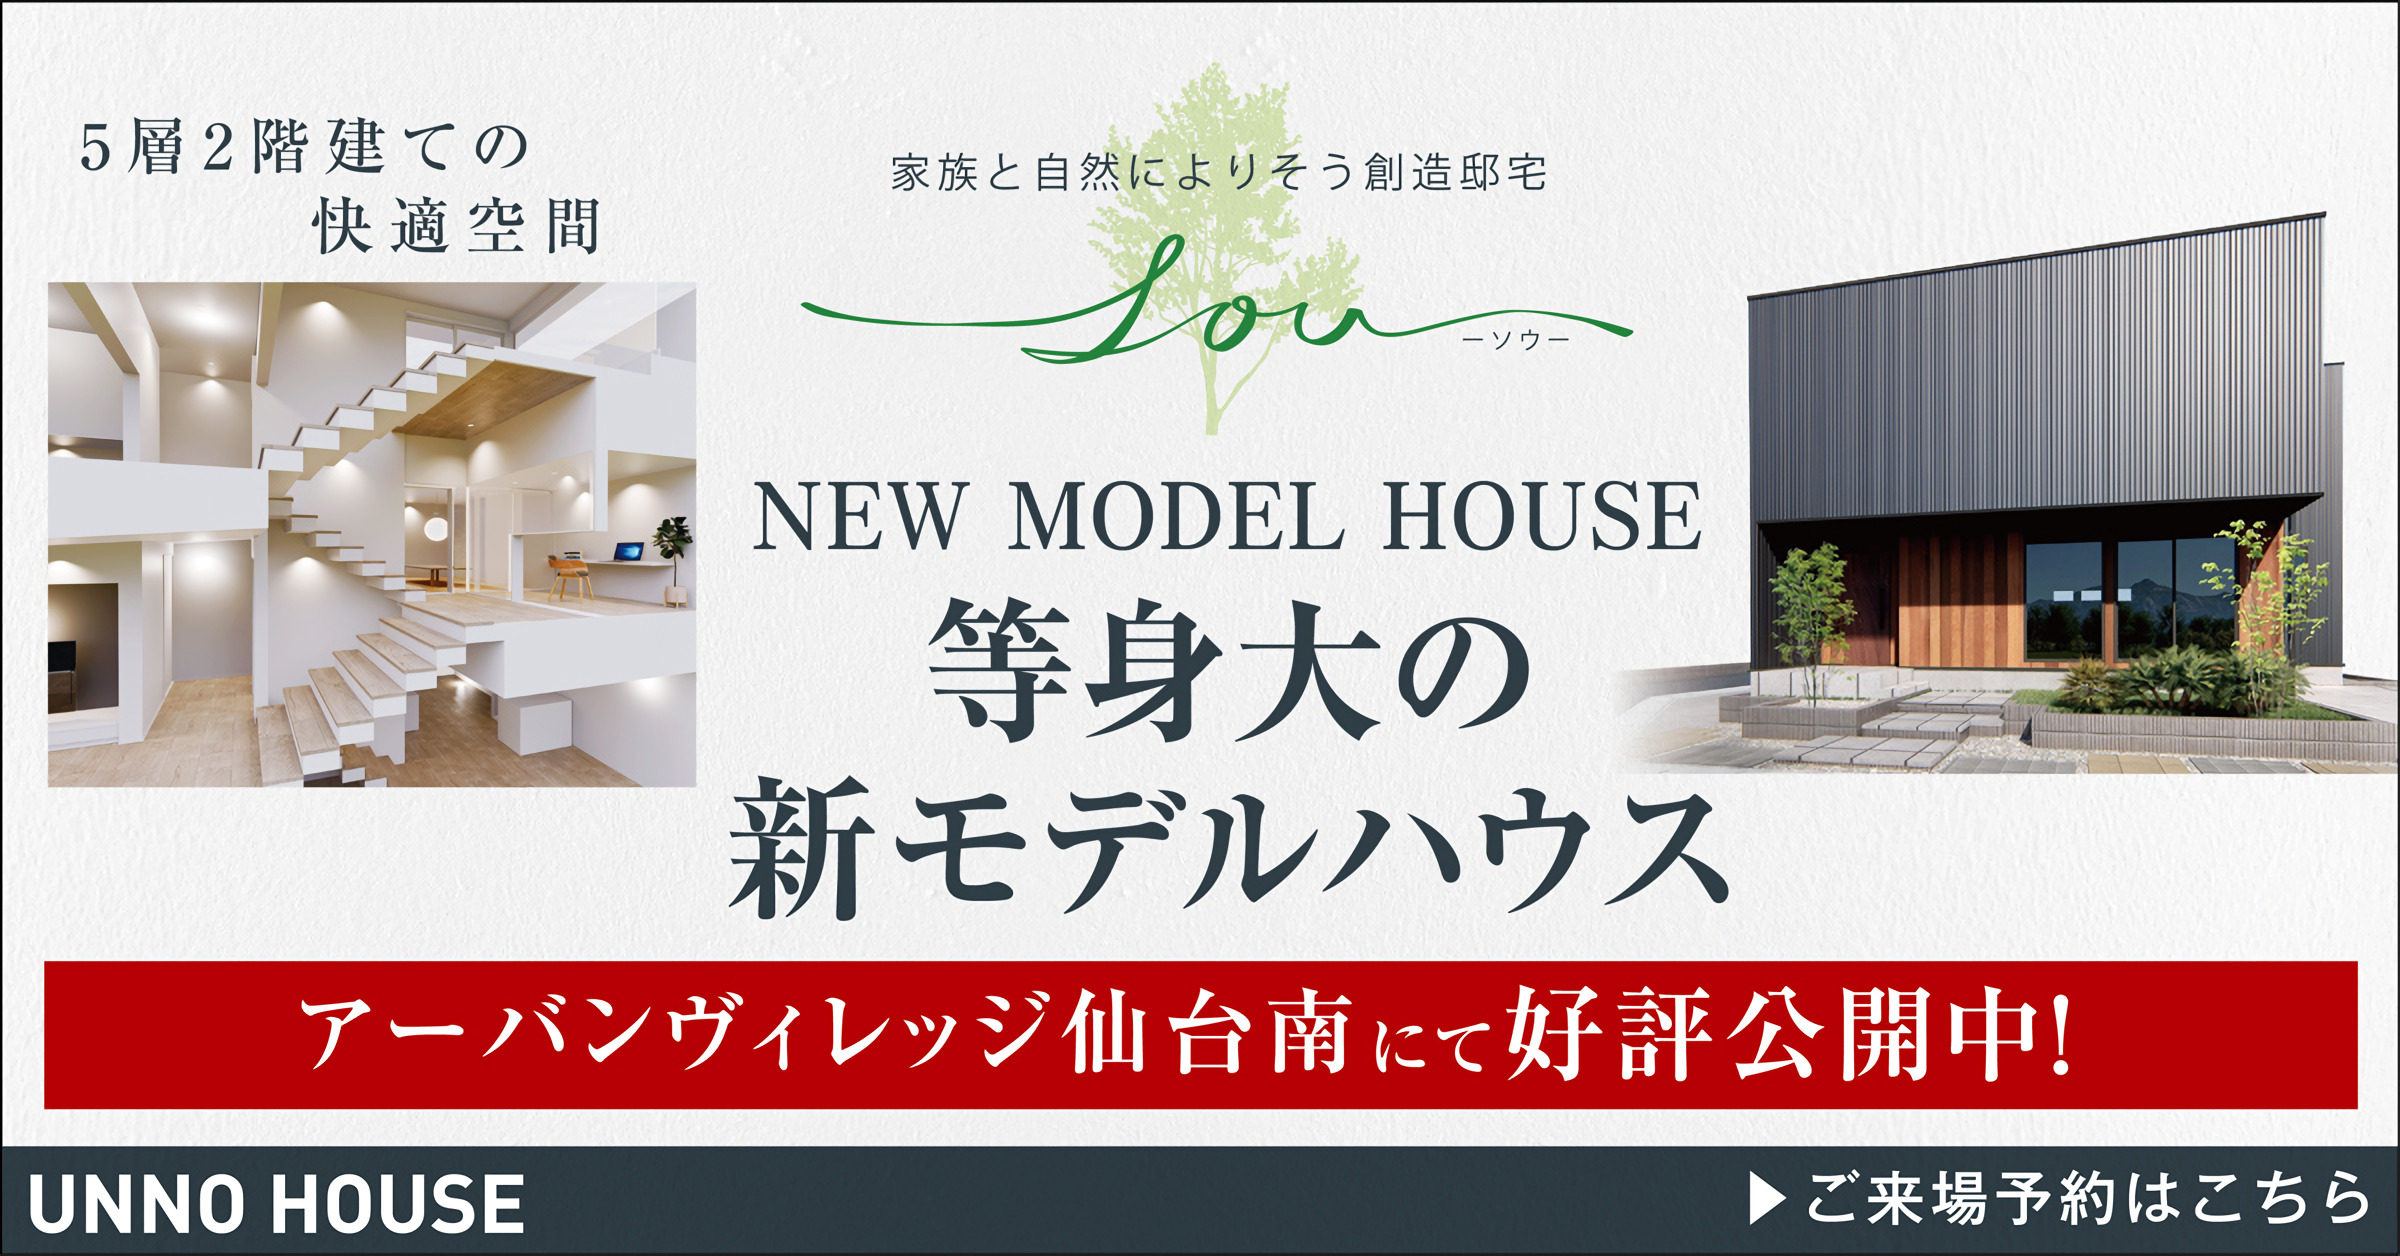 家族と自然によりそう創造邸宅
― ソウ ―
NEW MODEL HOUSE
等身大の新モデルハウス
アーバンヴィレッジ仙台南に好評公開中！